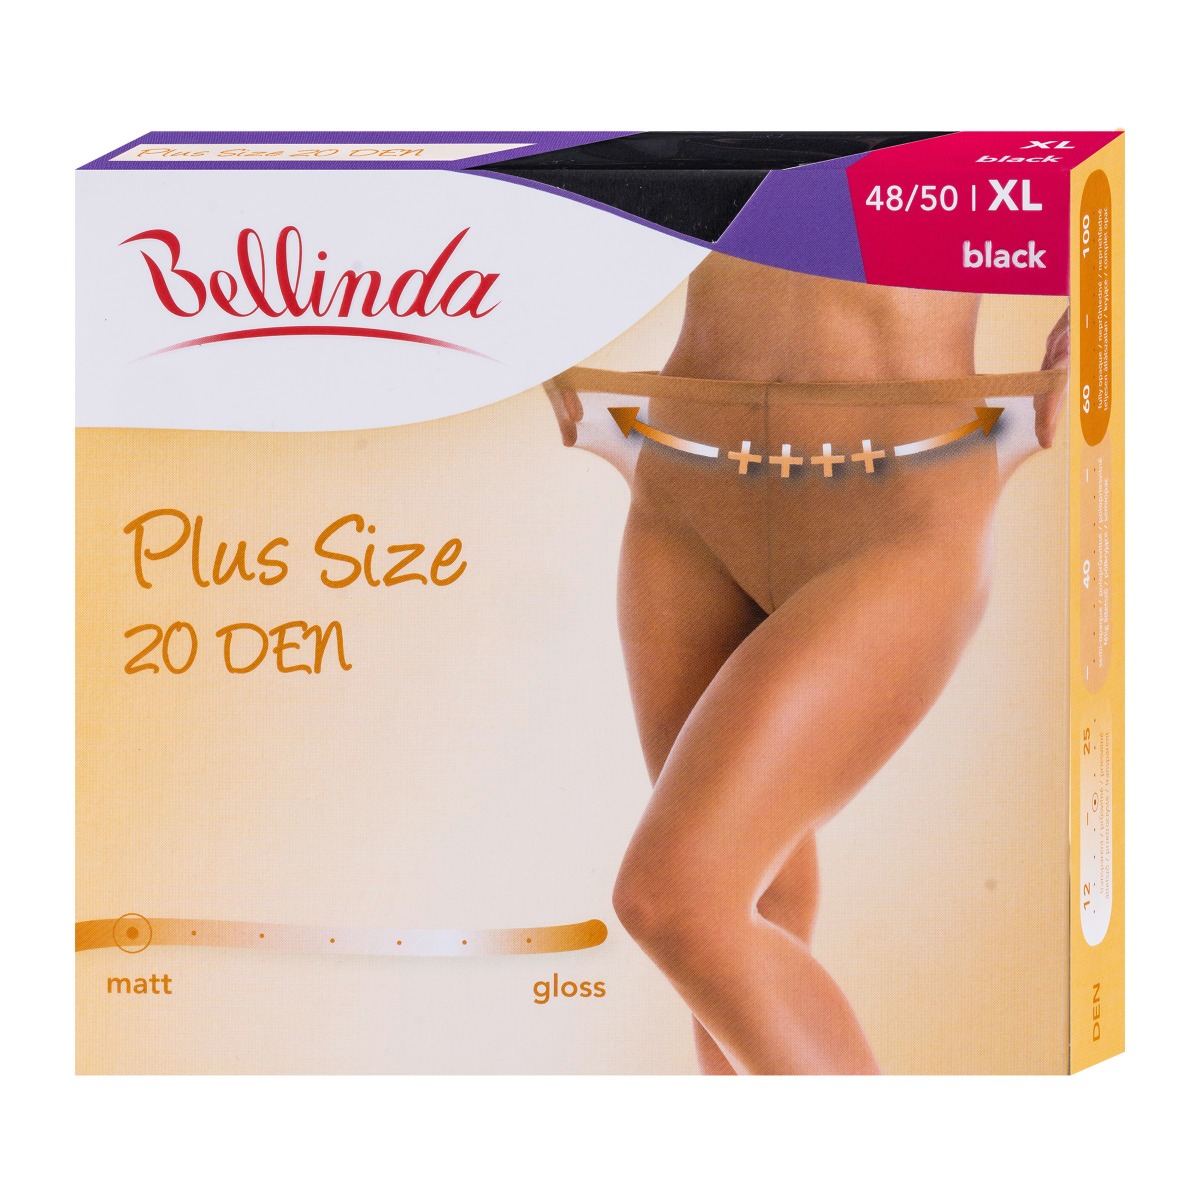 Bellinda Plus Size 20 DEN vel. XL punčochové kalhoty černé Bellinda